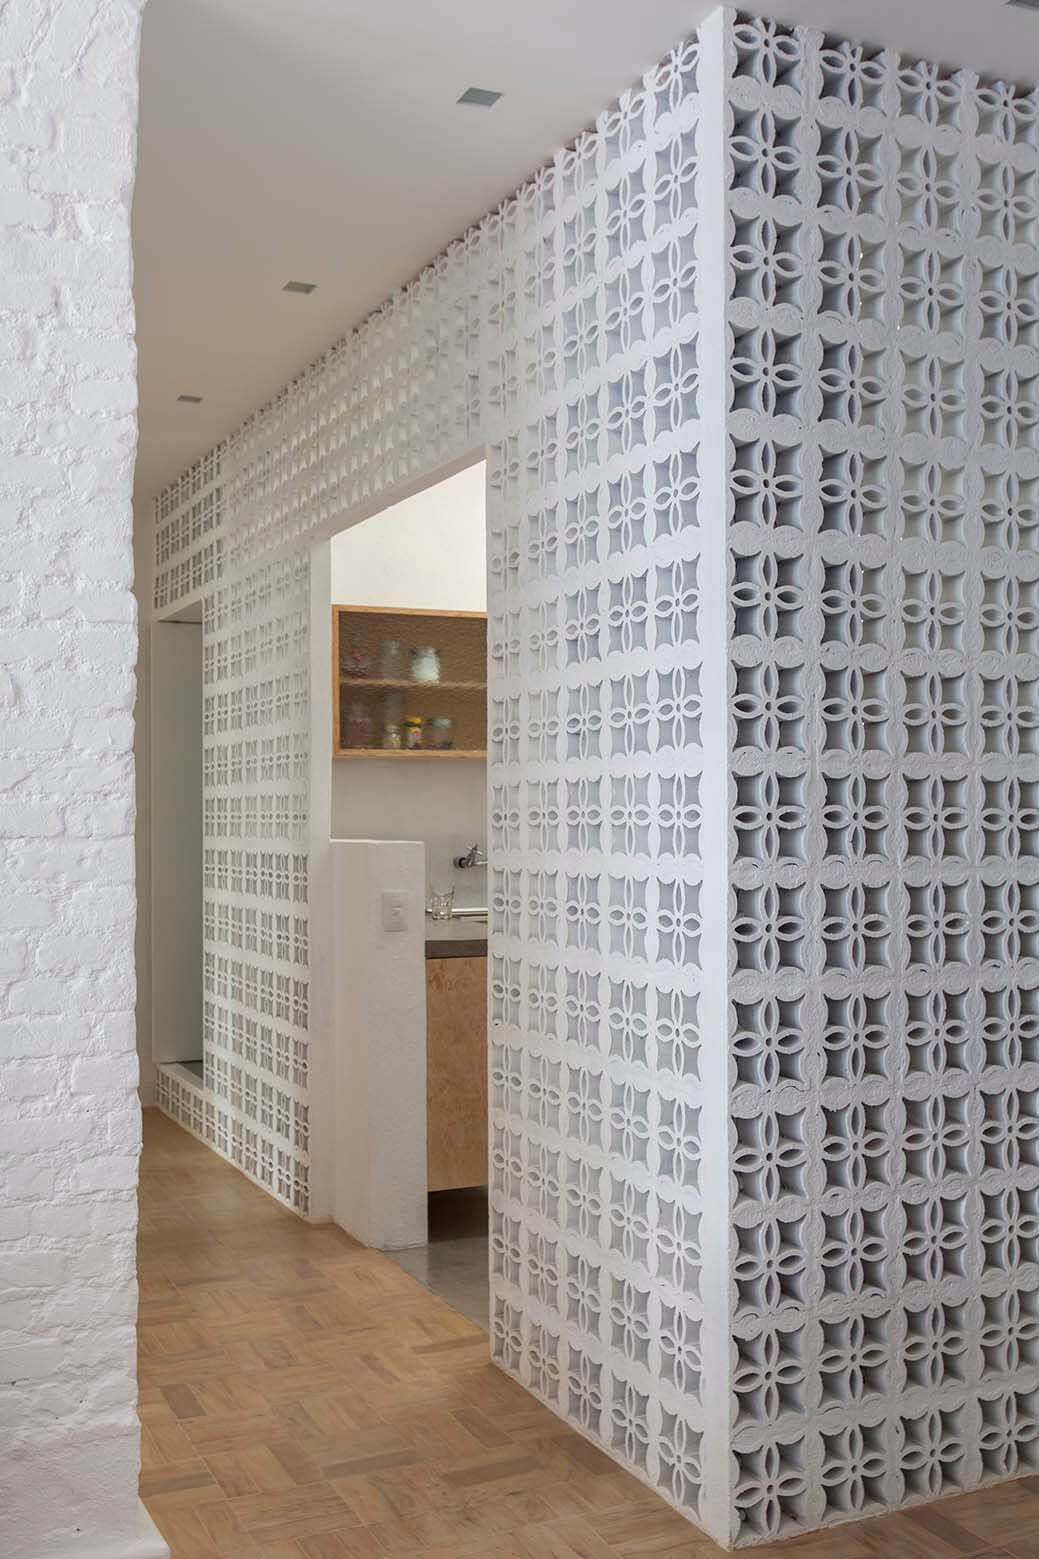 06-correrdor. Una pared blanca hecha con estos bloques de cerámica cierra la cocina separándola de la sala de estar, dejando a su vez pasar la luz y el aire